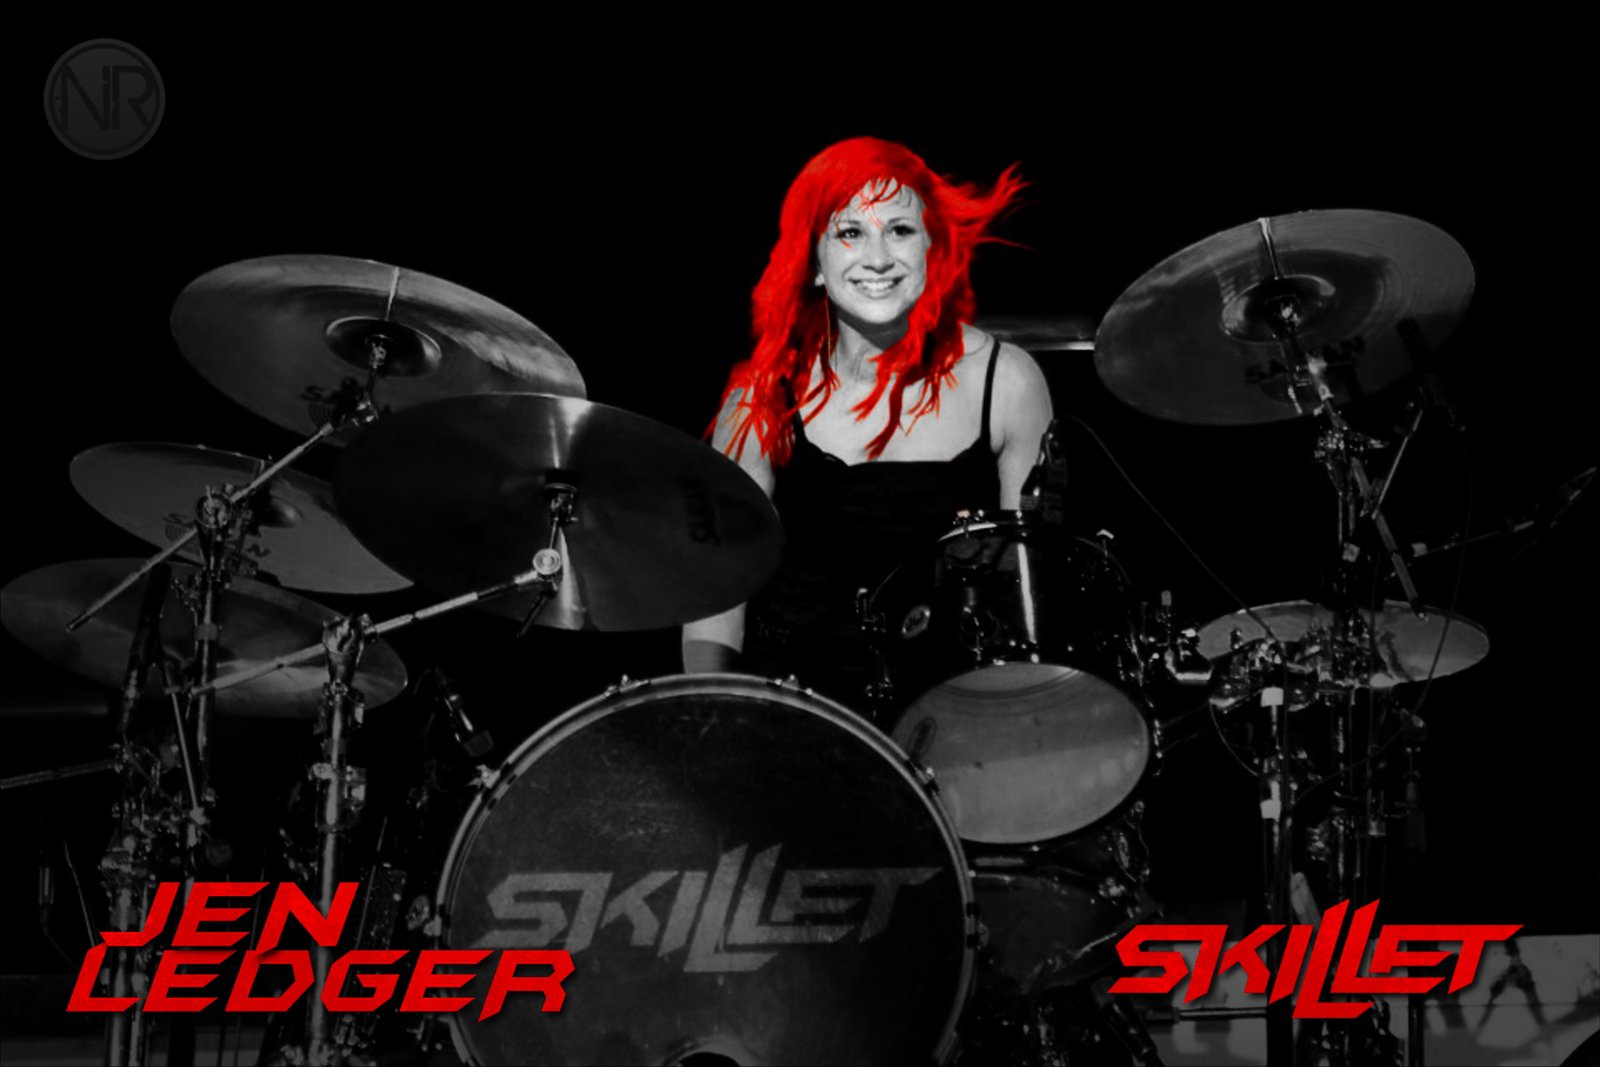 Jen Ledger Skillet Puter Background Red By Nreguingraphicdesign